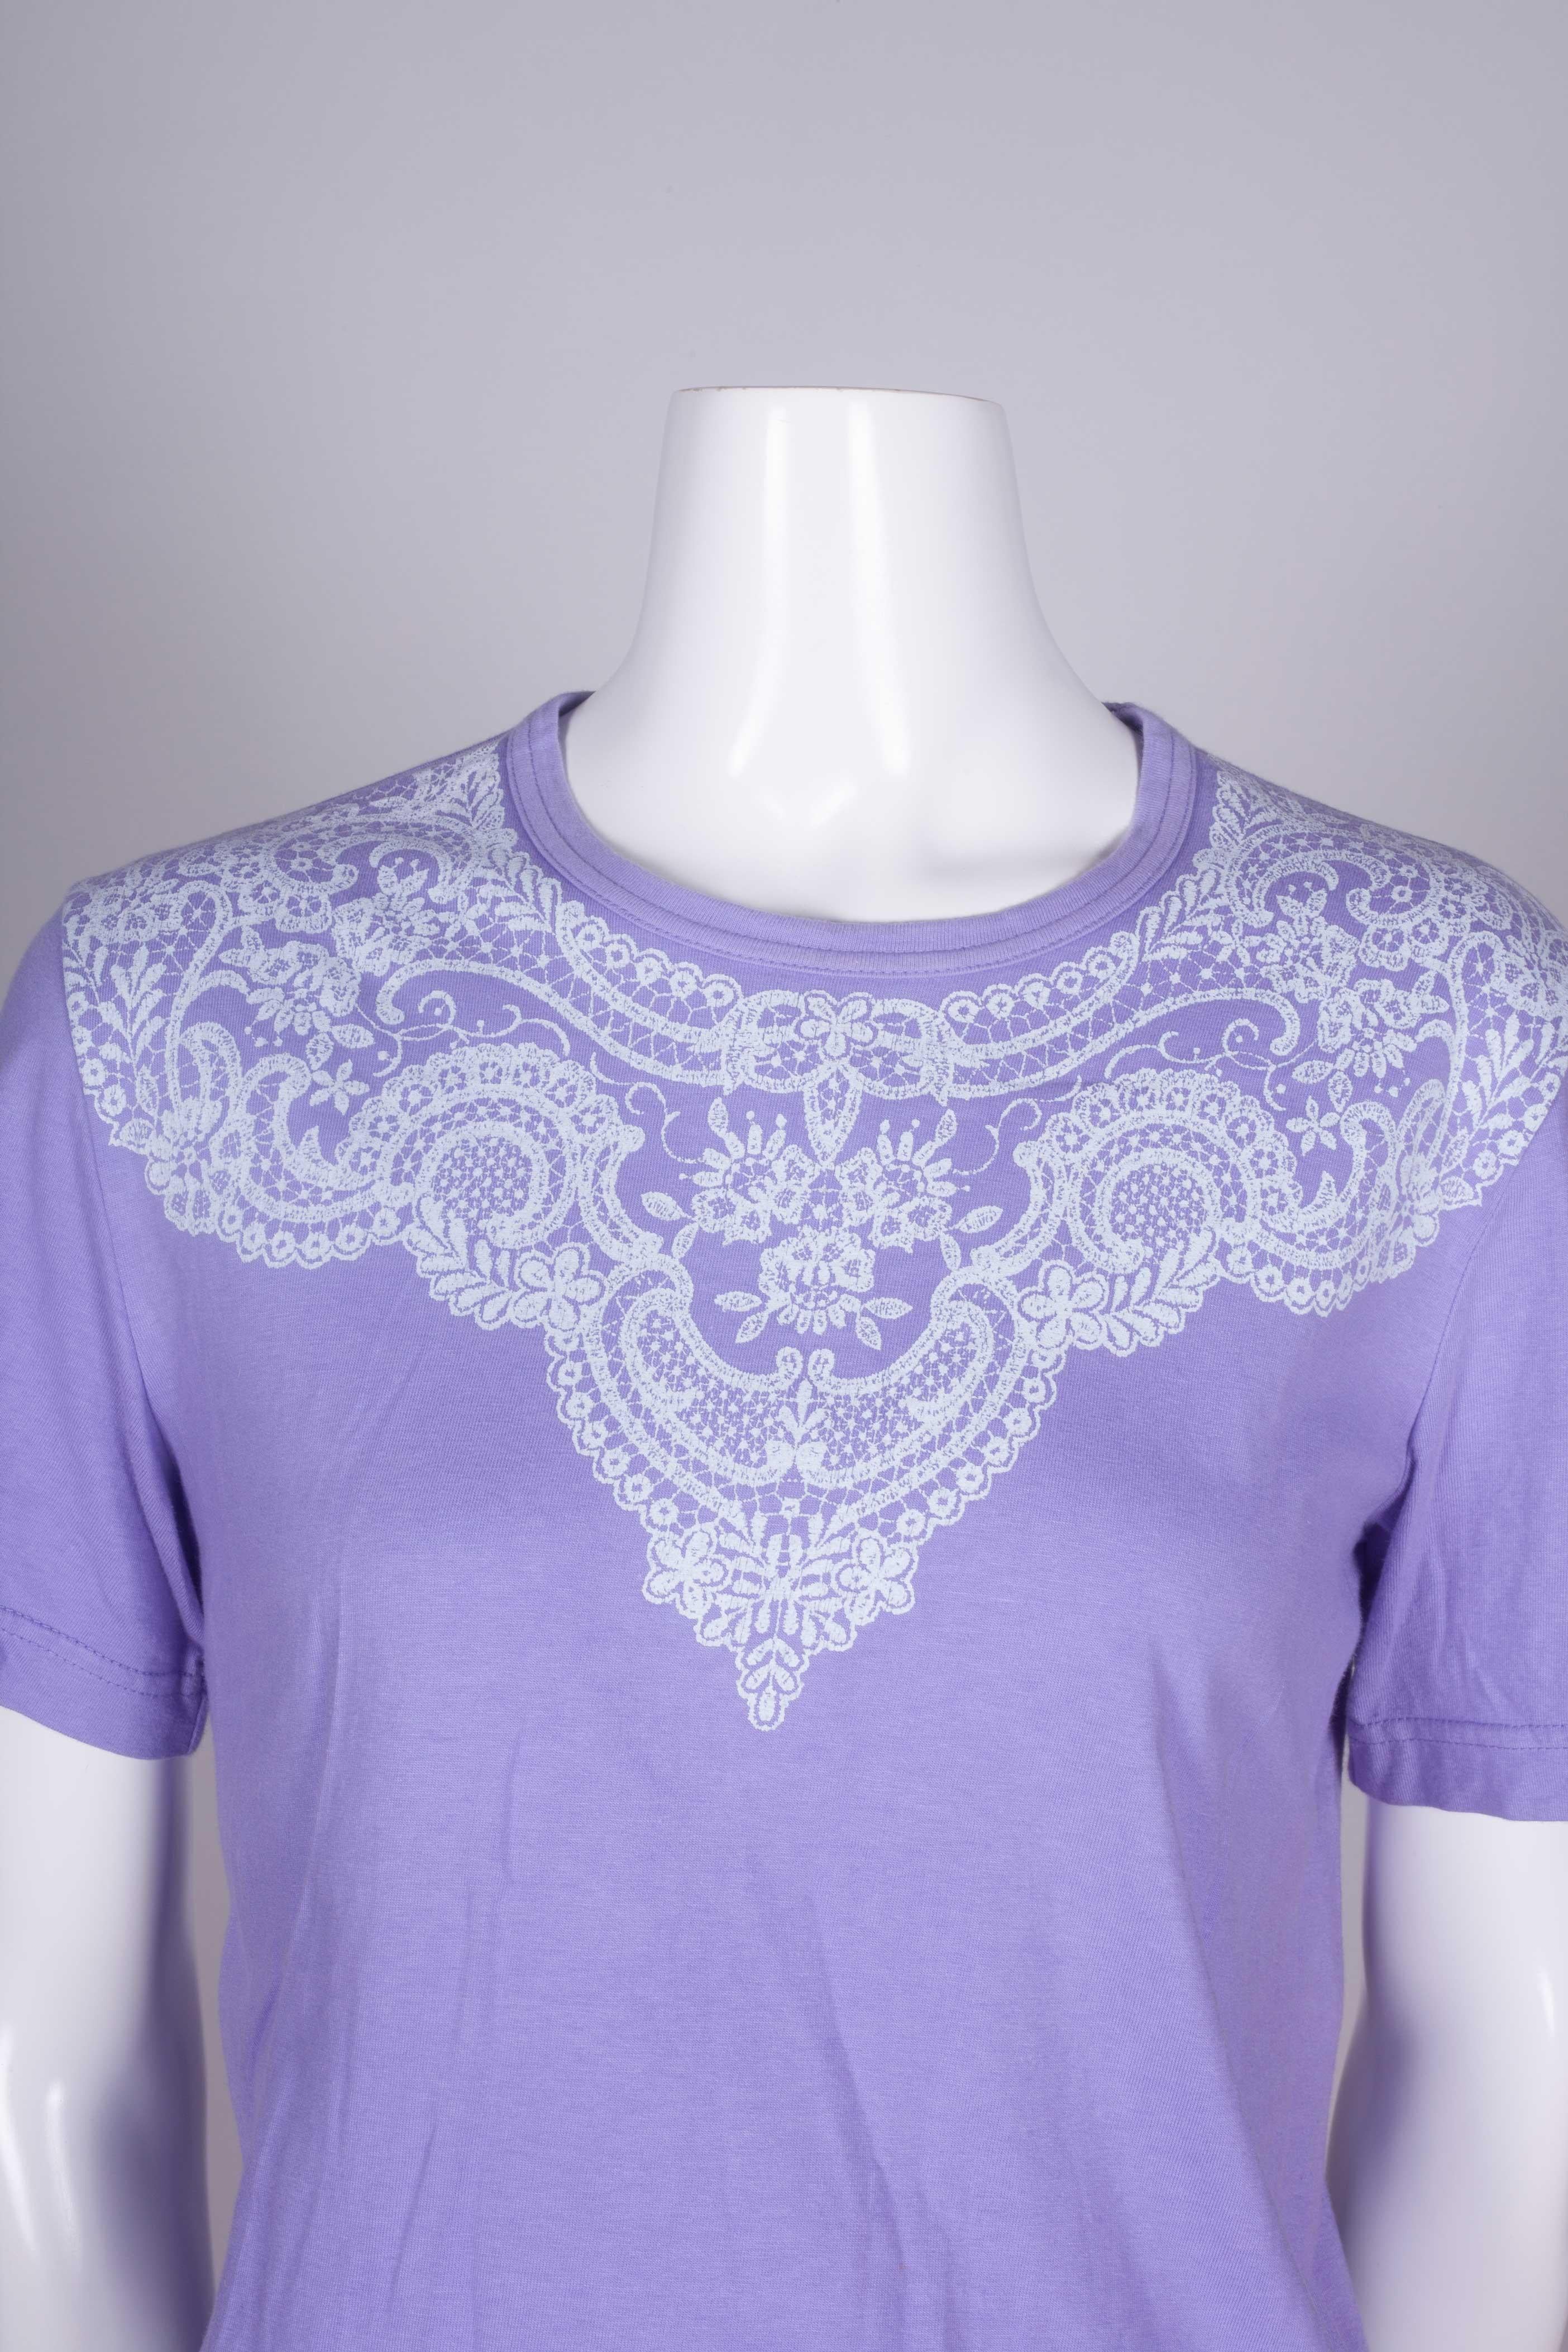 Comme des Garçons Purple T-shirt with Lace Motif, 2006 2